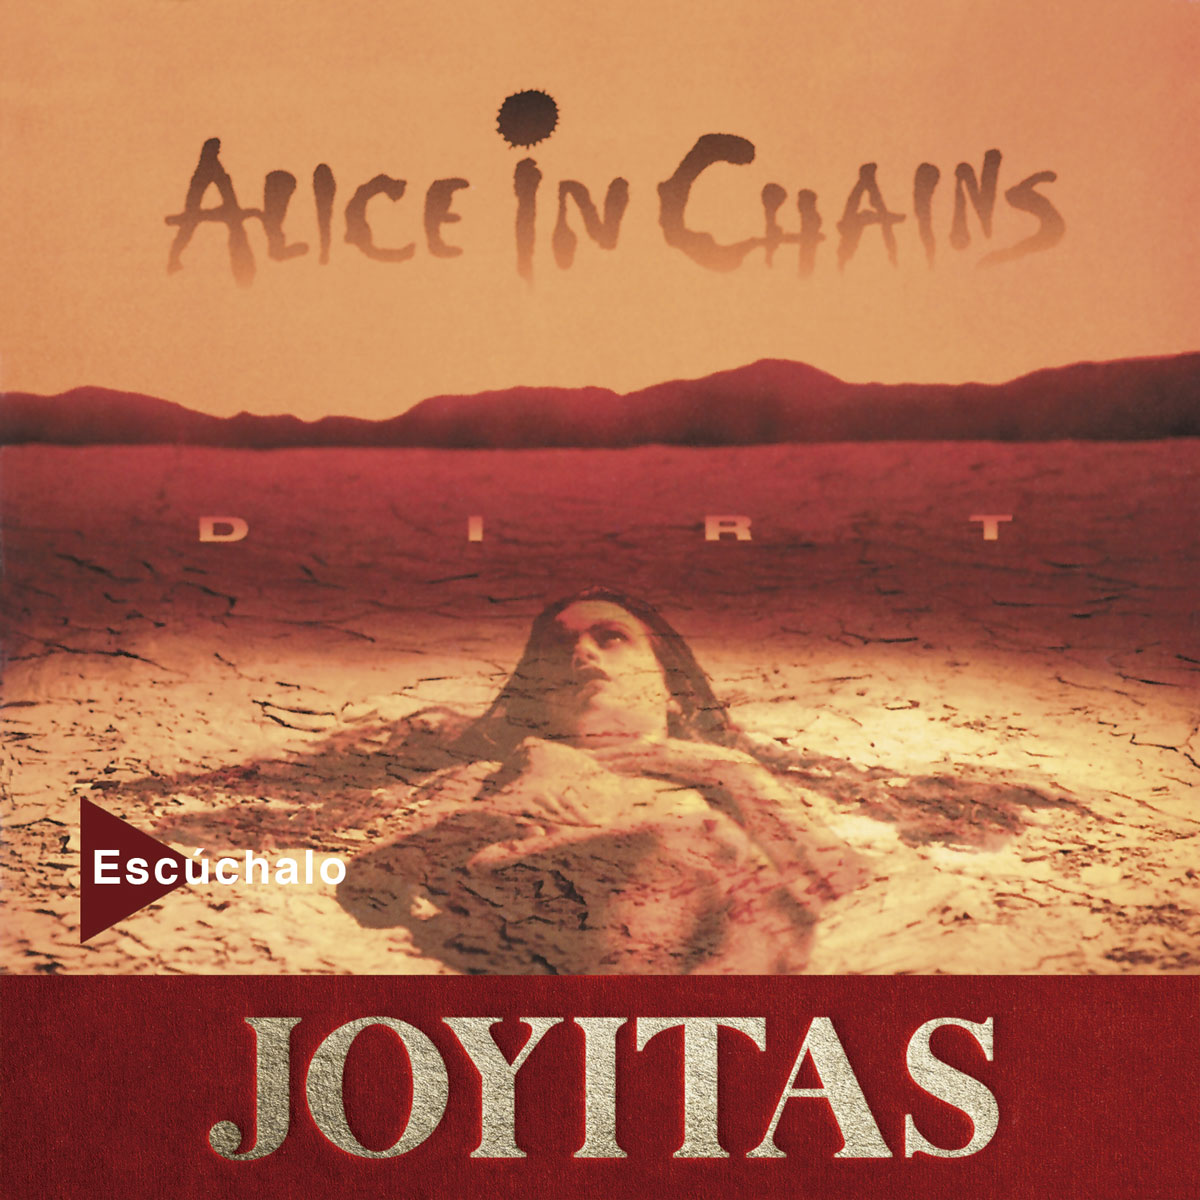 Alice in Chains reedita ‘Dirt’, con motivo de su 30 aniversario